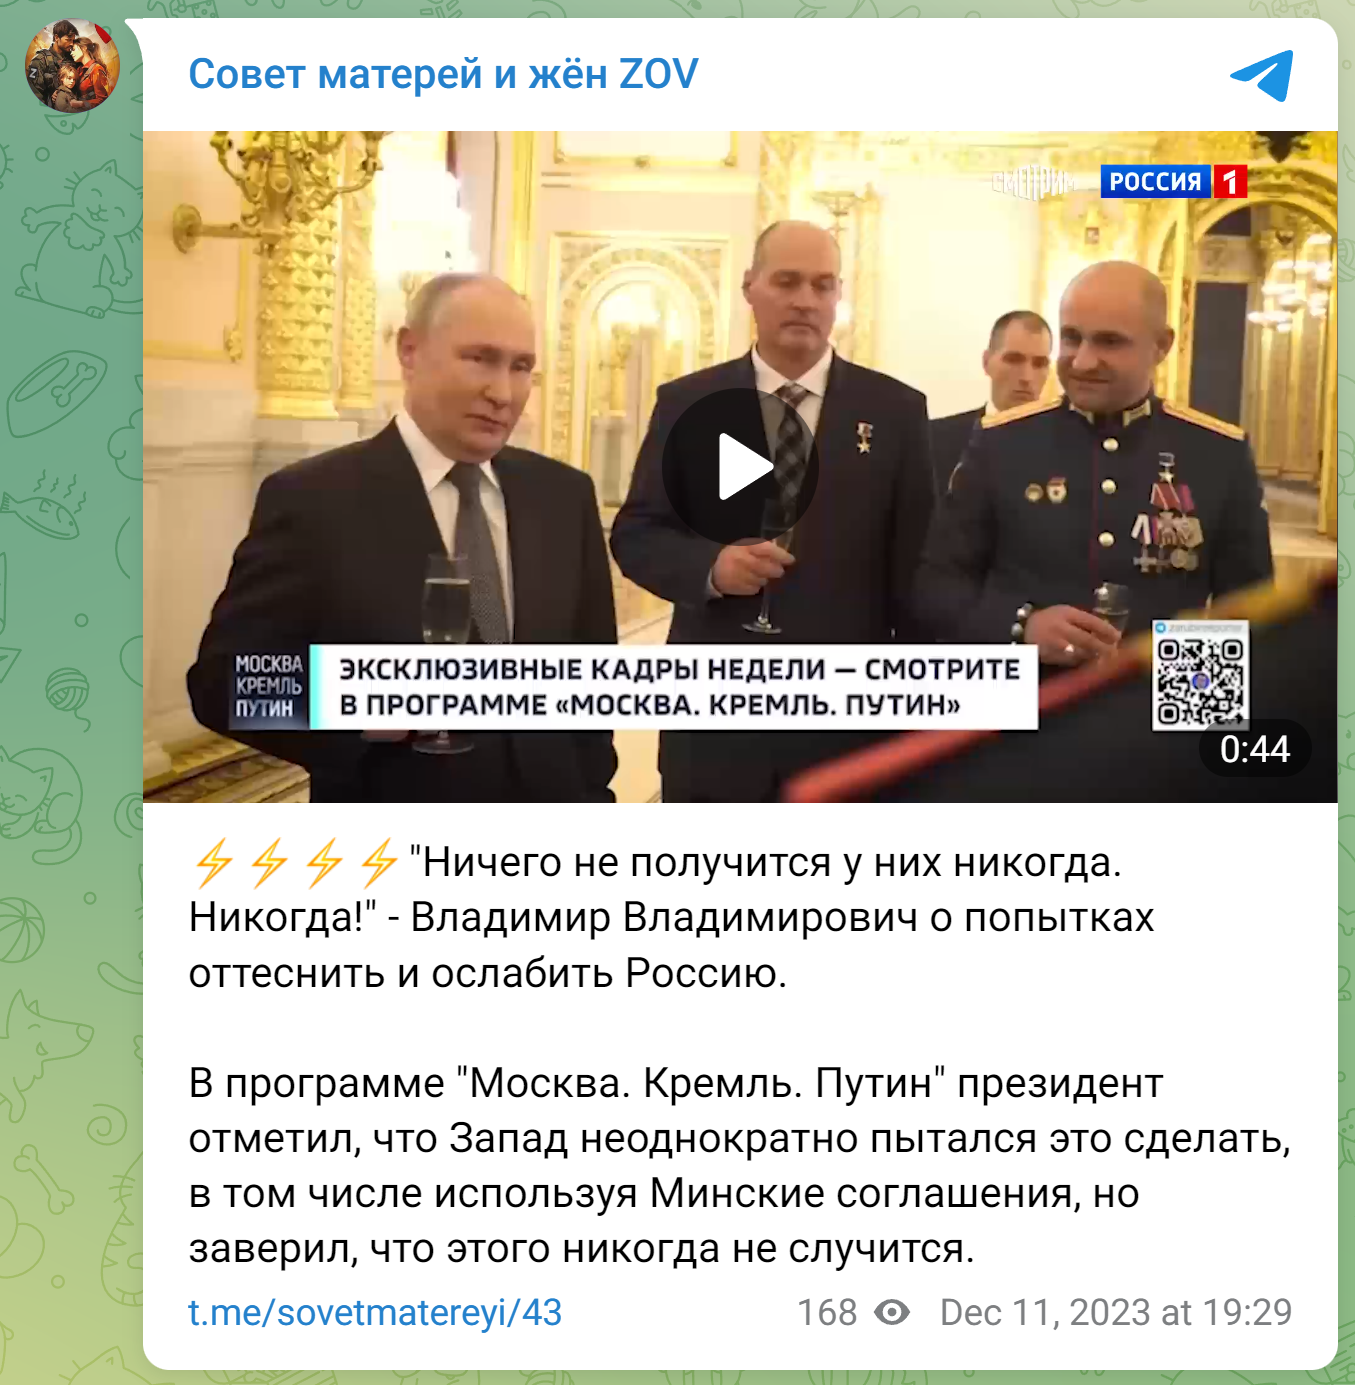 Посты с критикой Путина тоже публикуются
Телеграм-канал «Совет матерей и жён ZOV»